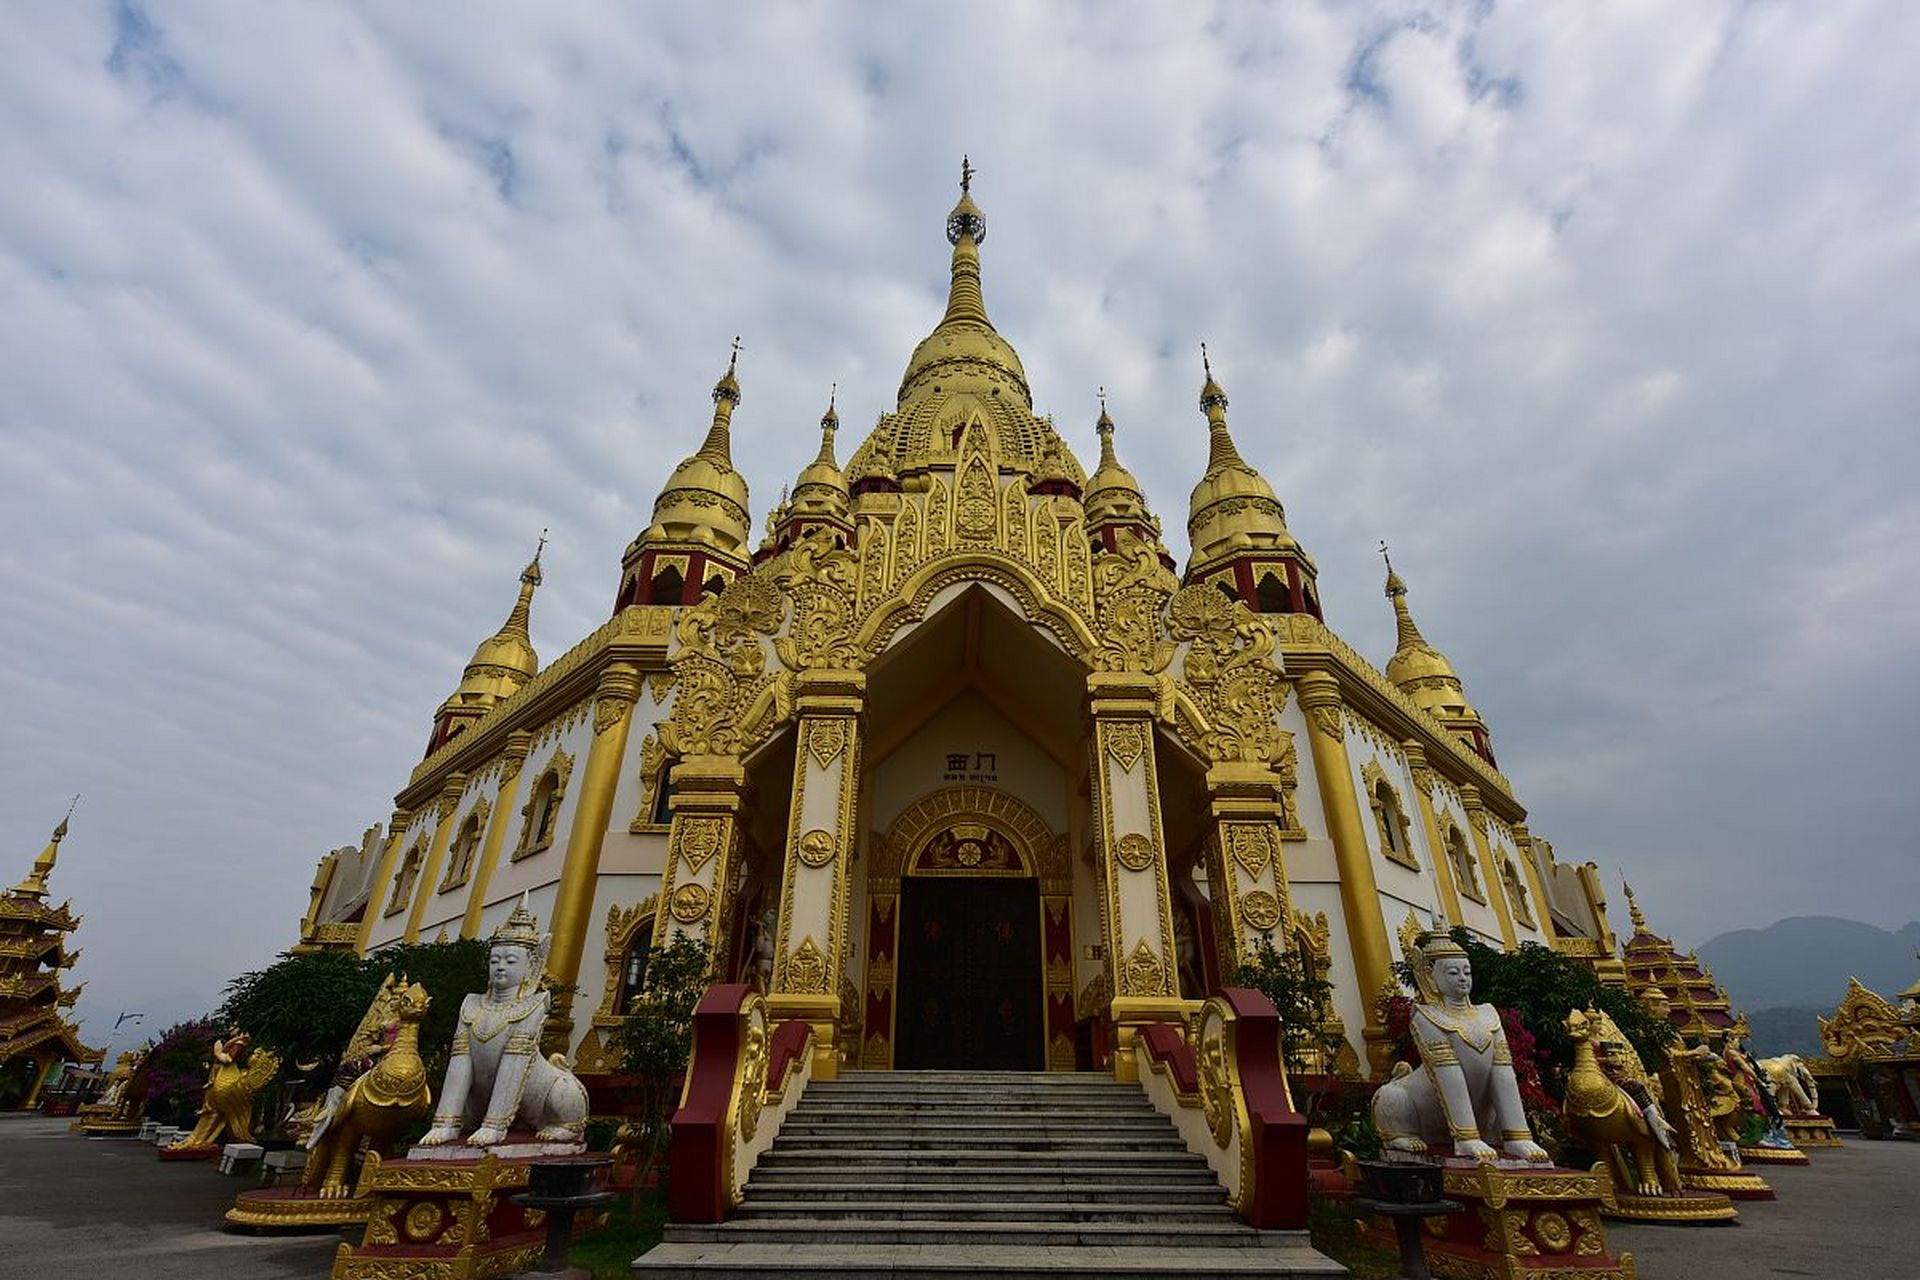 勐焕大金塔,位于云南芒市,是一座宏伟的佛塔,是傣族地区的重要宗教